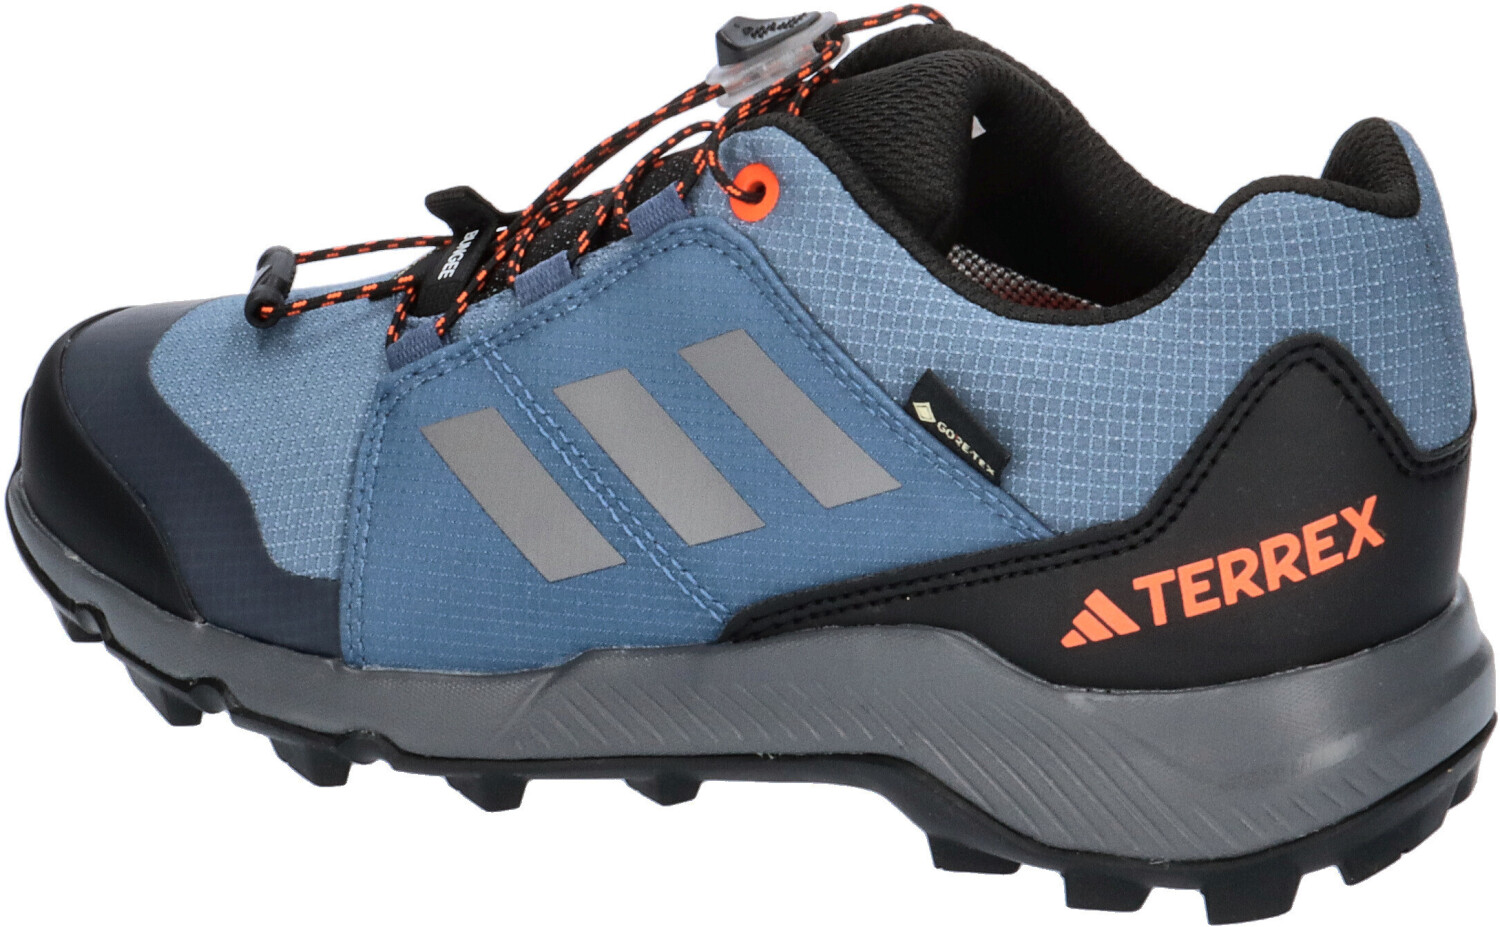 Adidas Terrex Gore-Tex Hiking Kids steel/grey 59,95 Preisvergleich three/impact | € bei wonder ab orange